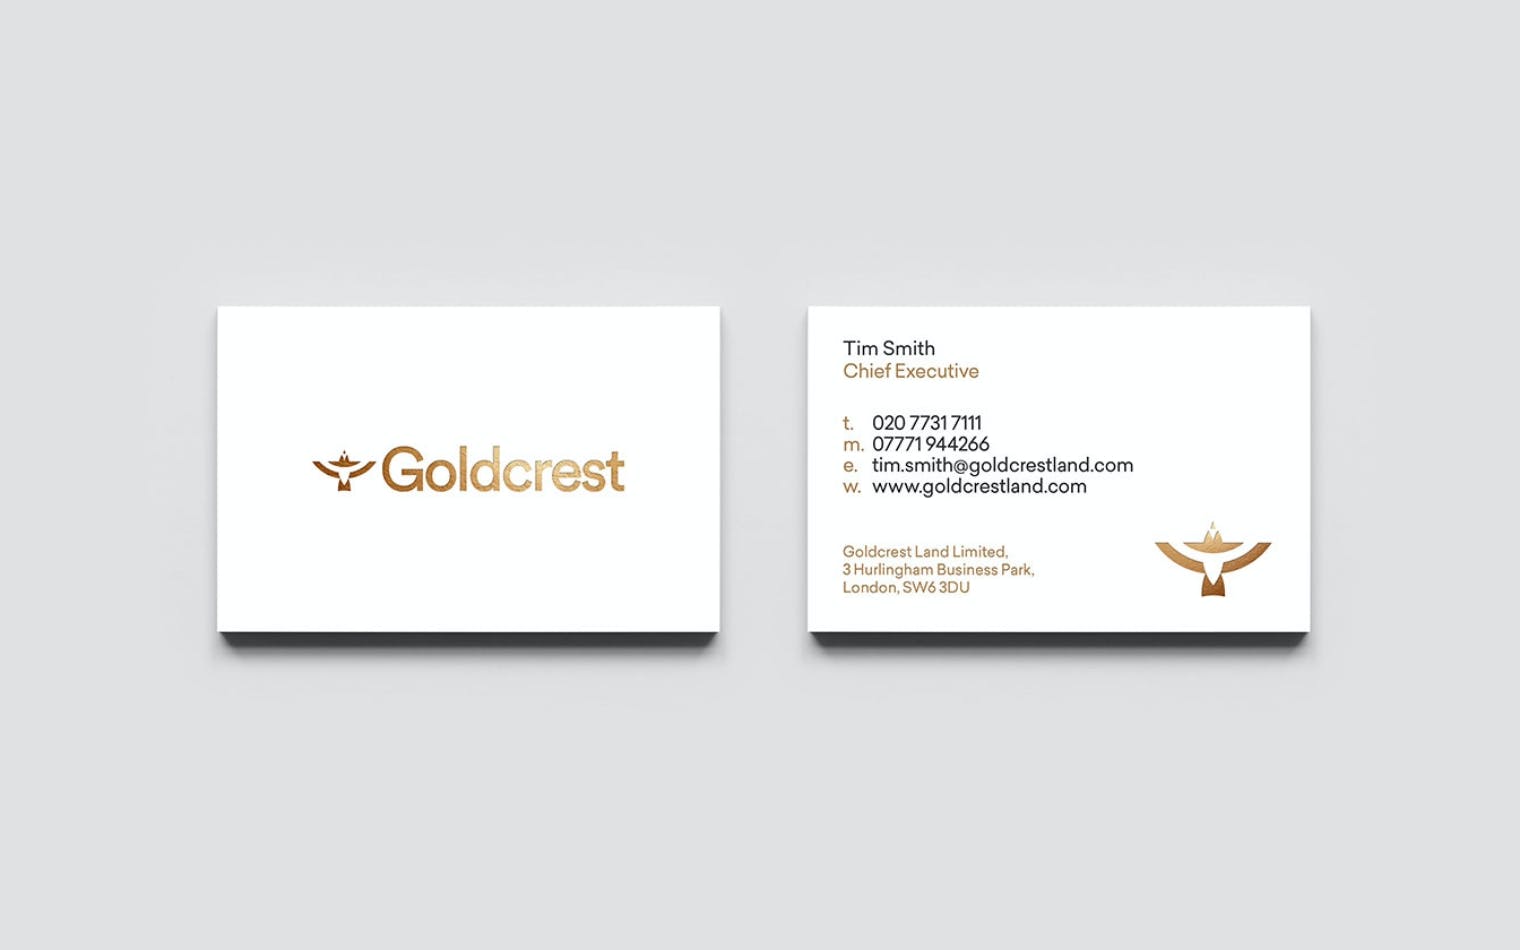 Goldcrest | Steve Edge Design